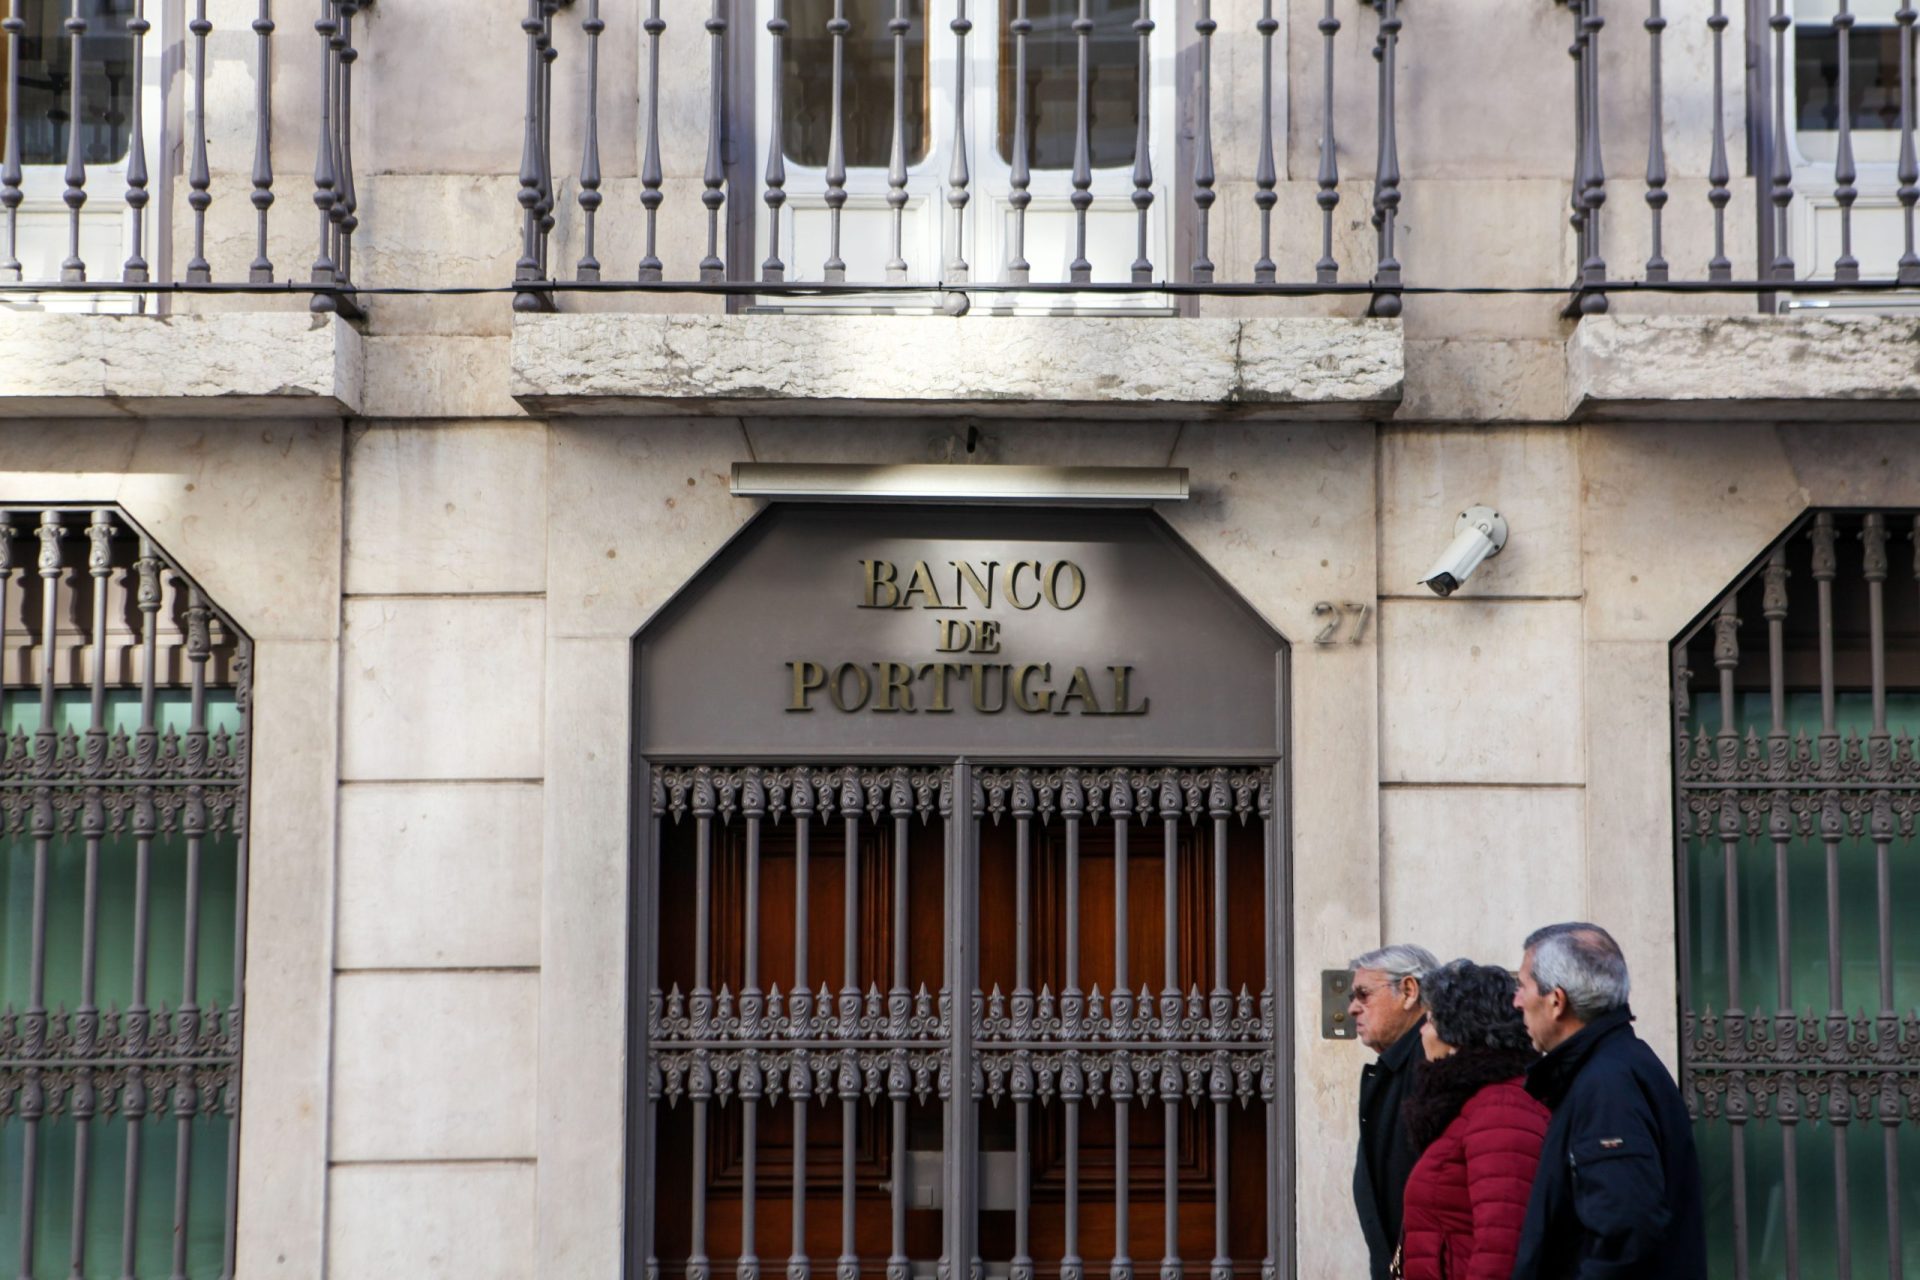 Banco de Portugal alerta para “suposta entidade” não habilitada a conceder crédito